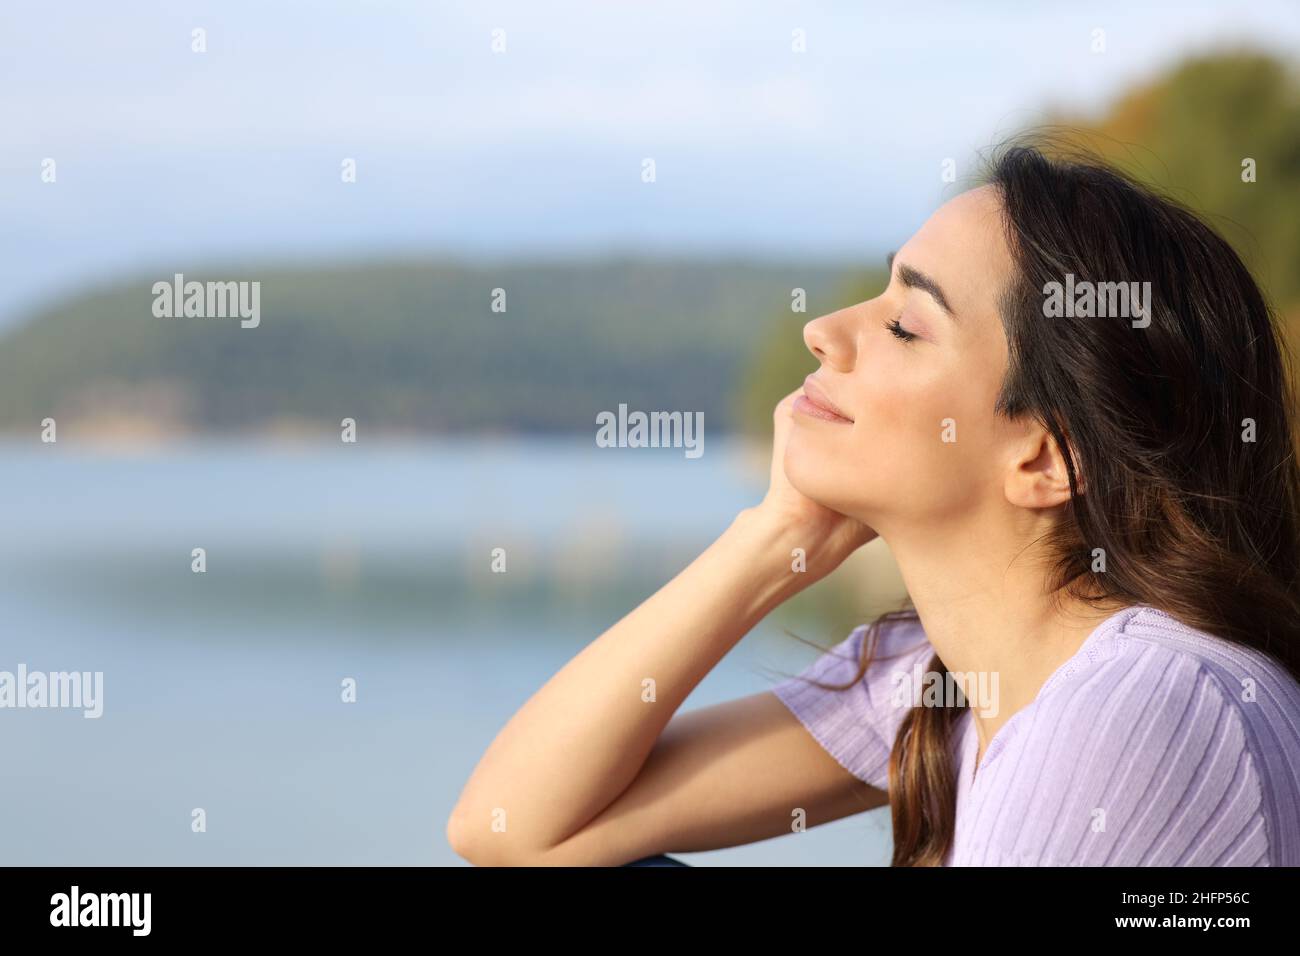 Profil d'une femme heureuse se relaxant dans un lac Banque D'Images